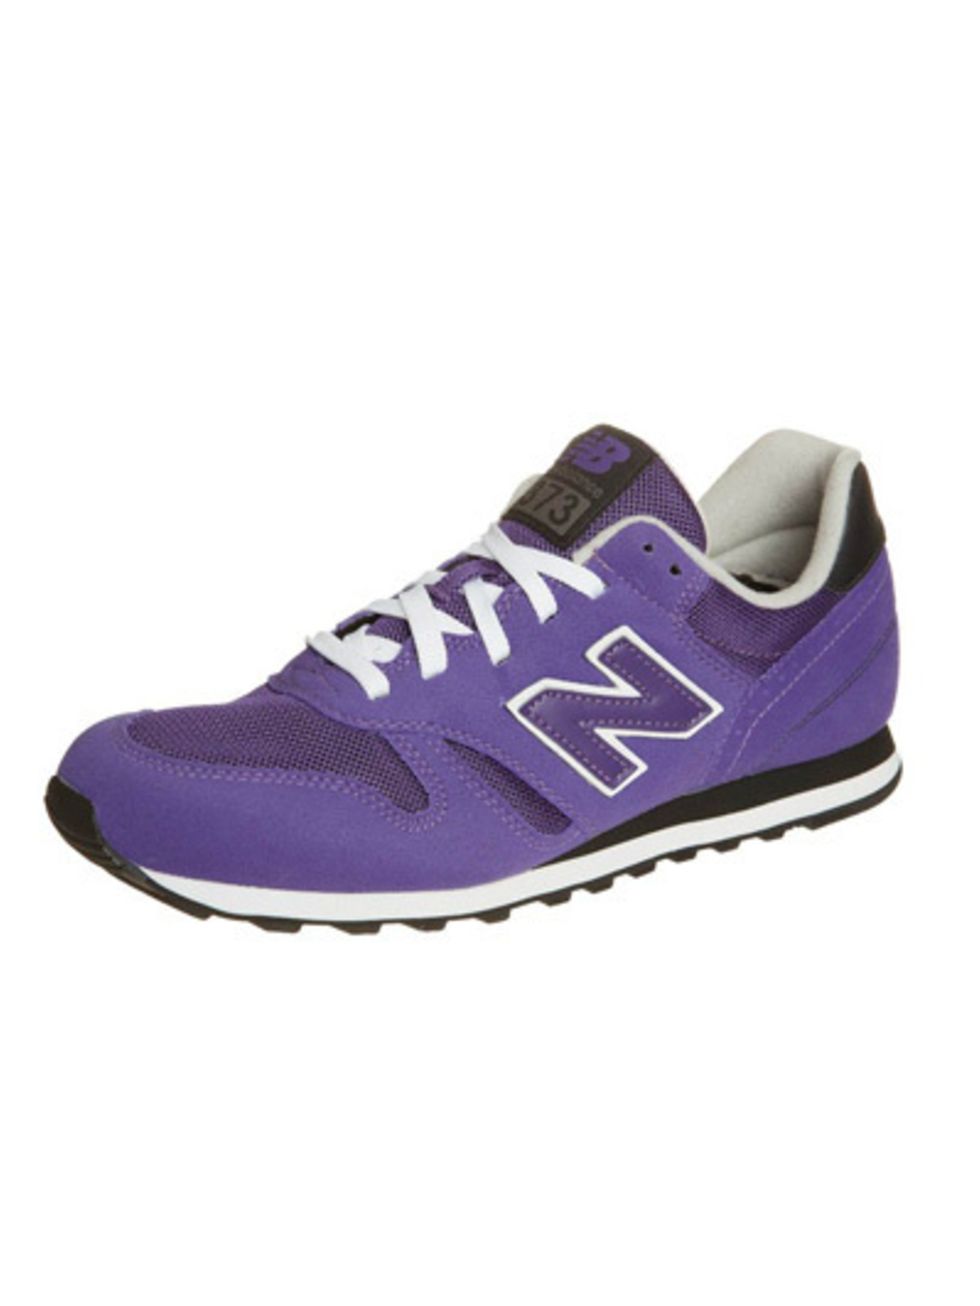 Footwear, Shoe, Product, Purple, White, Violet, Sportswear, Athletic shoe, Sneakers, Logo, 